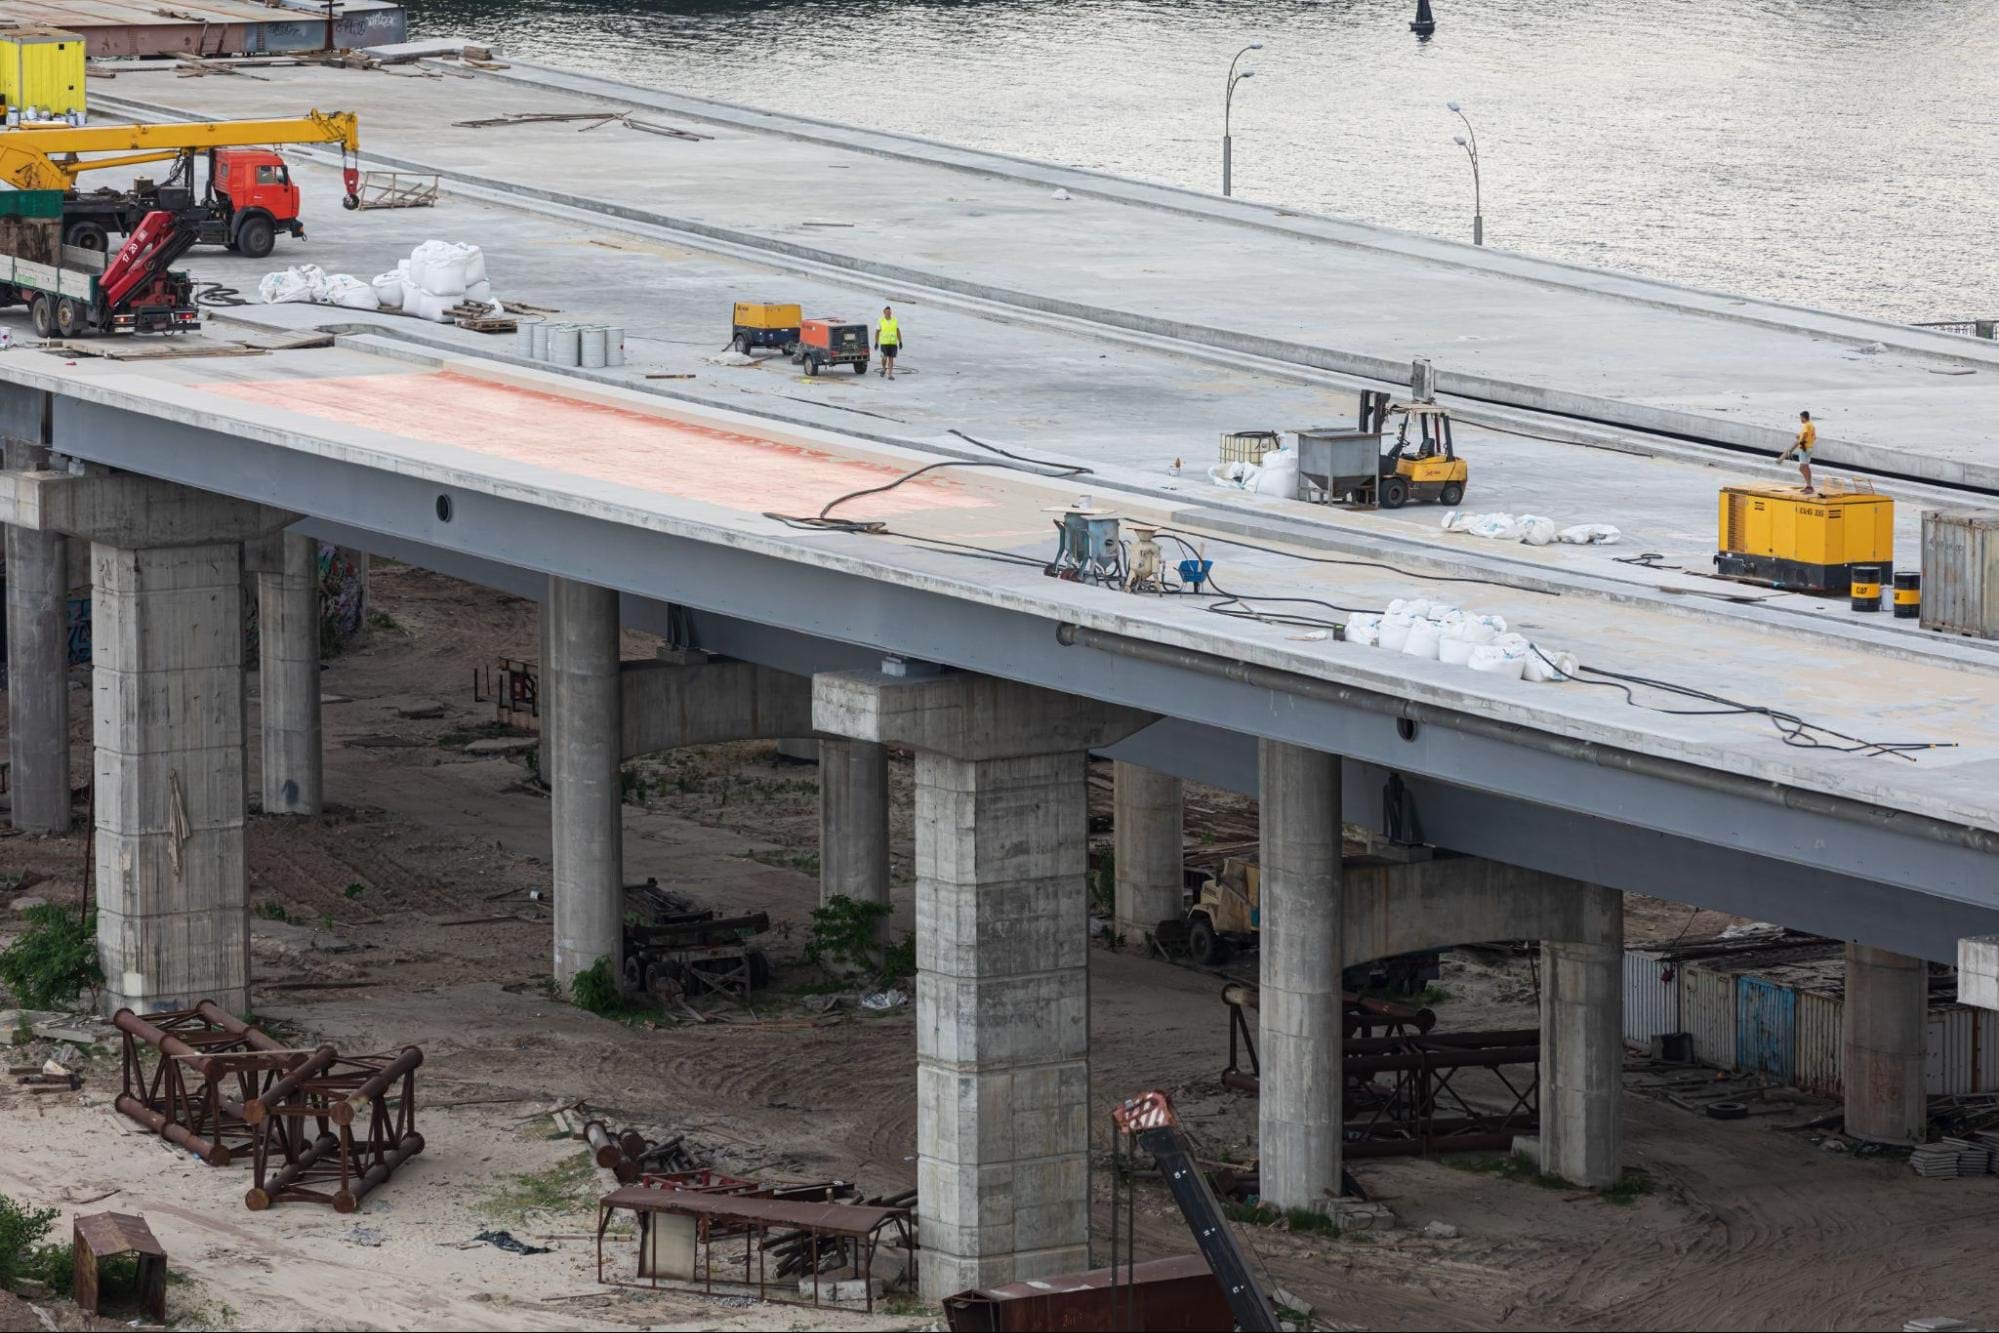 Izgradnja mosta u tijeku. Na mostu su radnici, vozila i pribor za gradnju.